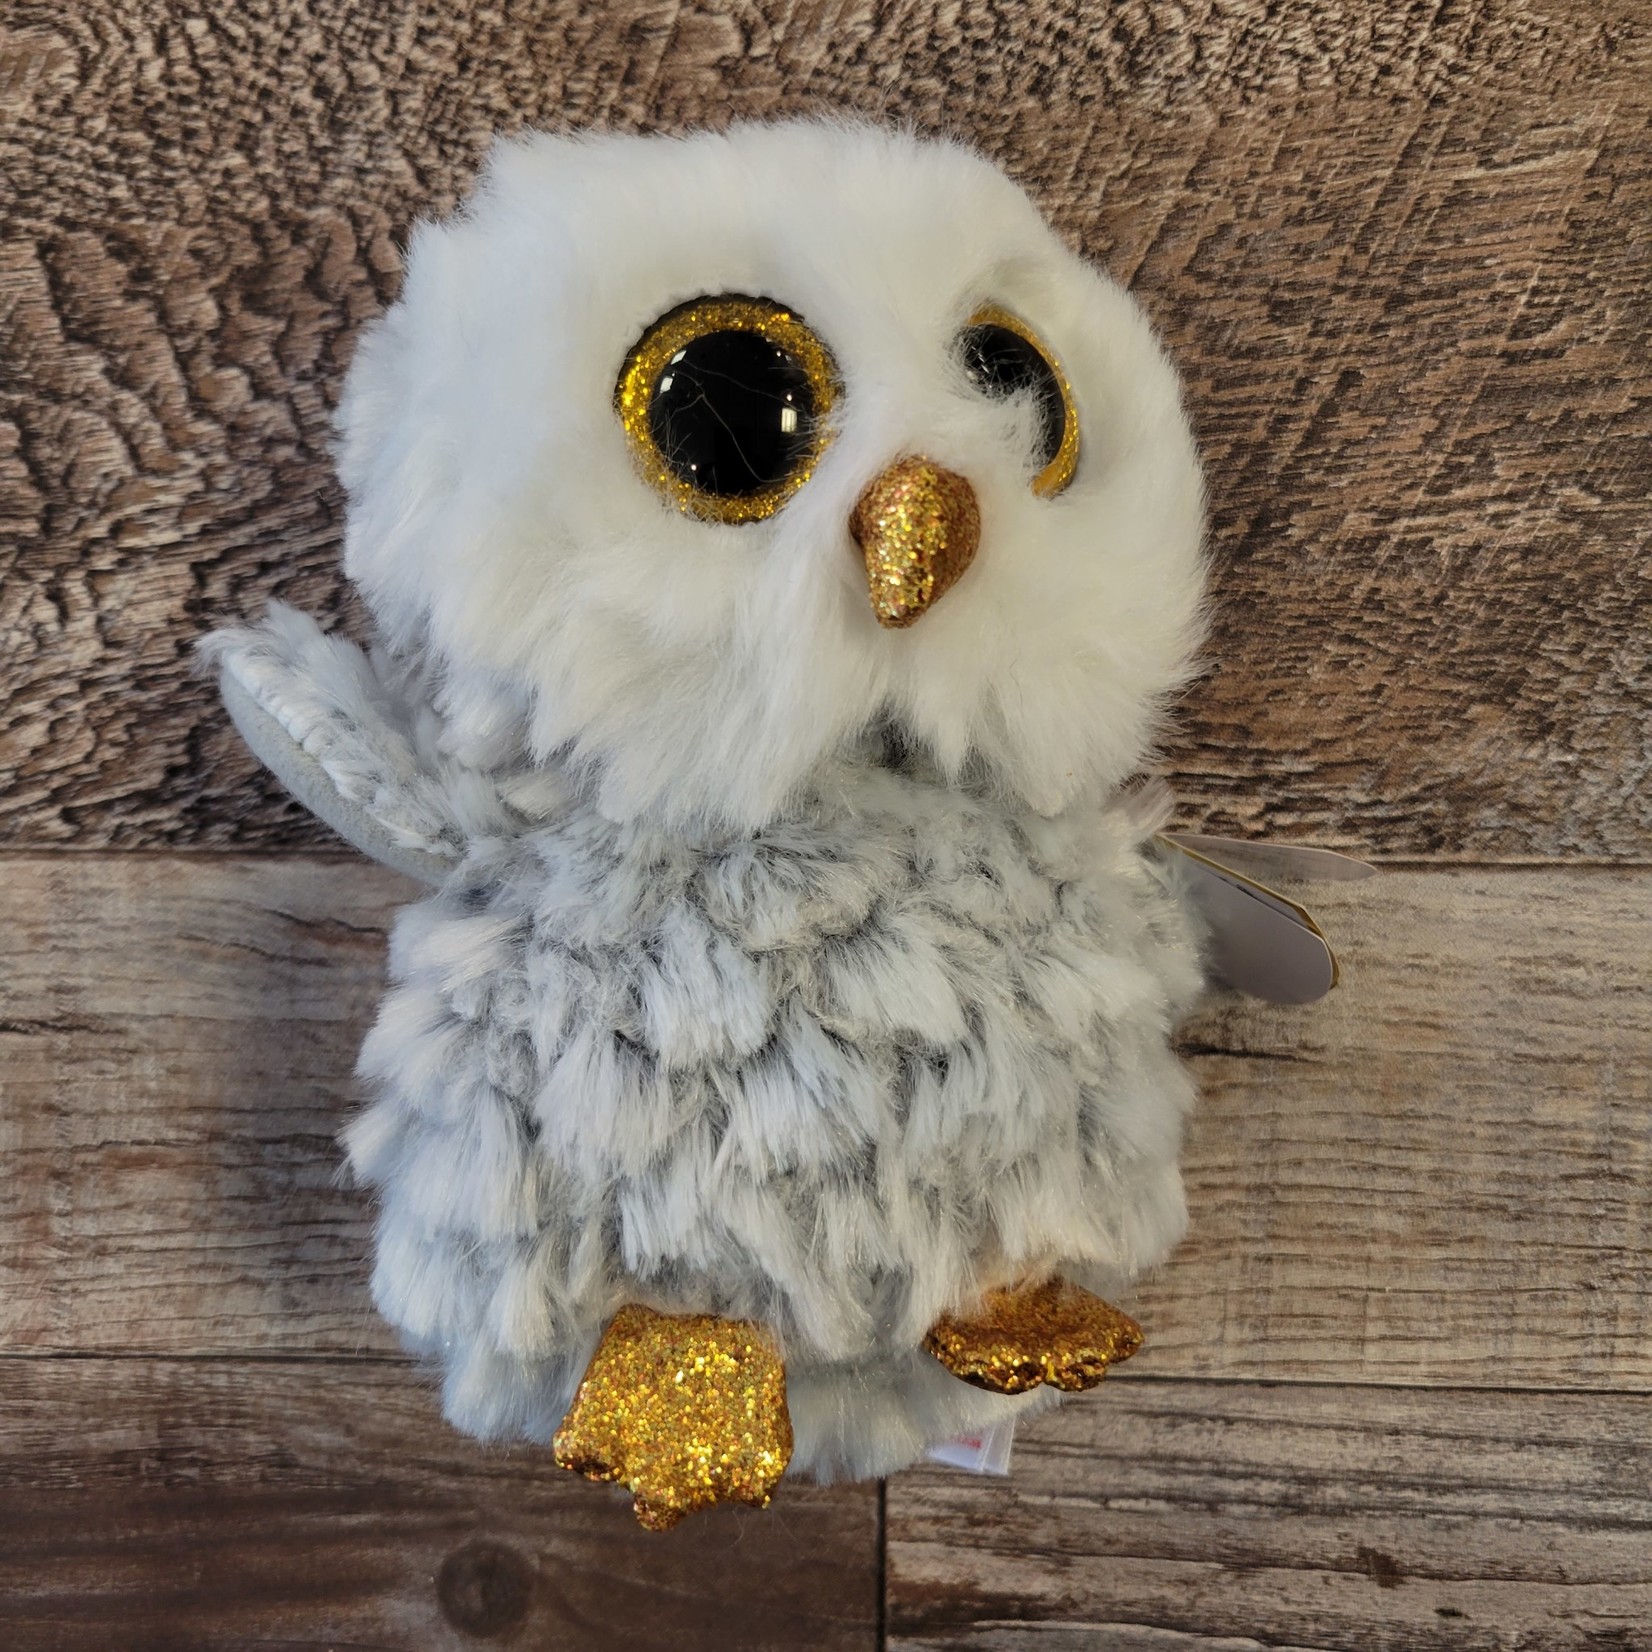 TY Beanie Boo - Owlette the Owl